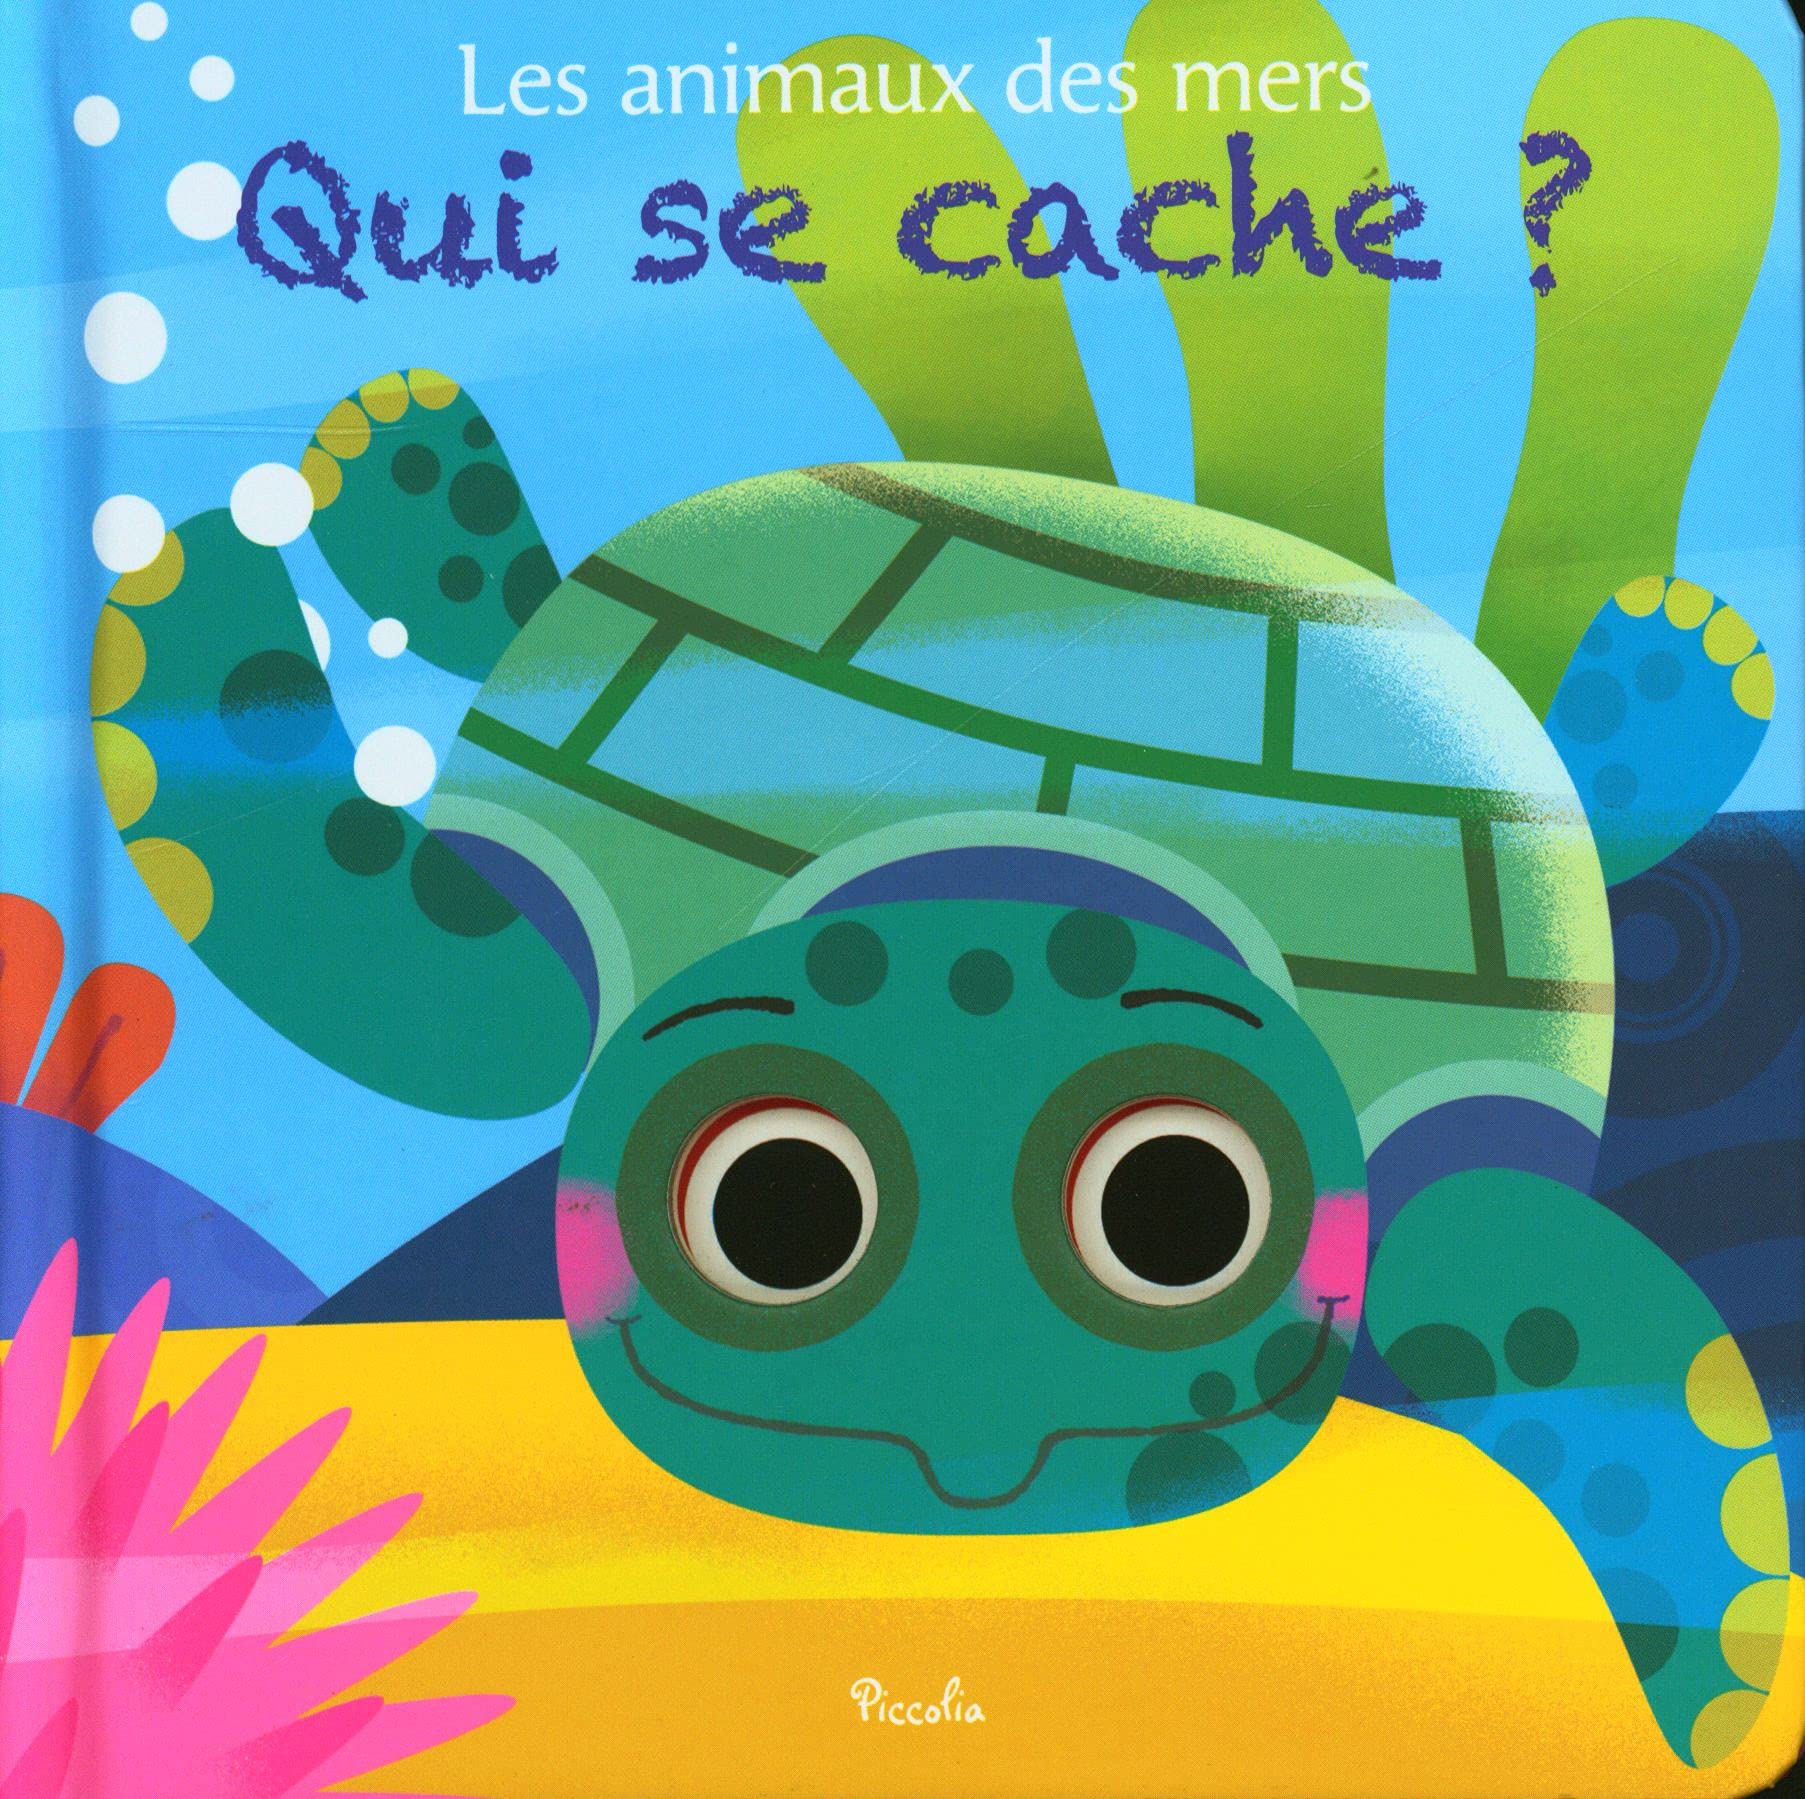 法文精裝立體洞洞書 Les animaux des mers - Qui se cache ? 海洋動物 - 誰在躲著？